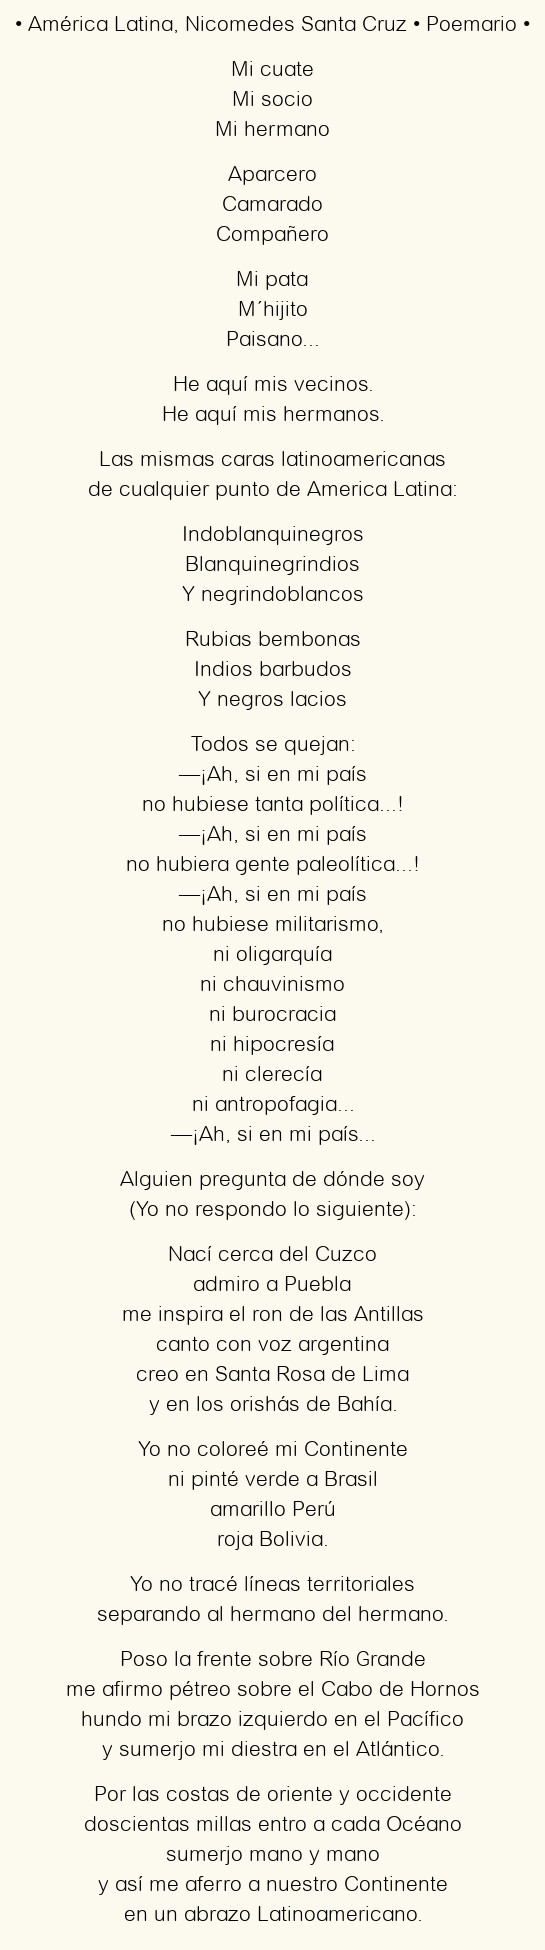 Imagen con el poema América Latina, por Nicomedes Santa Cruz